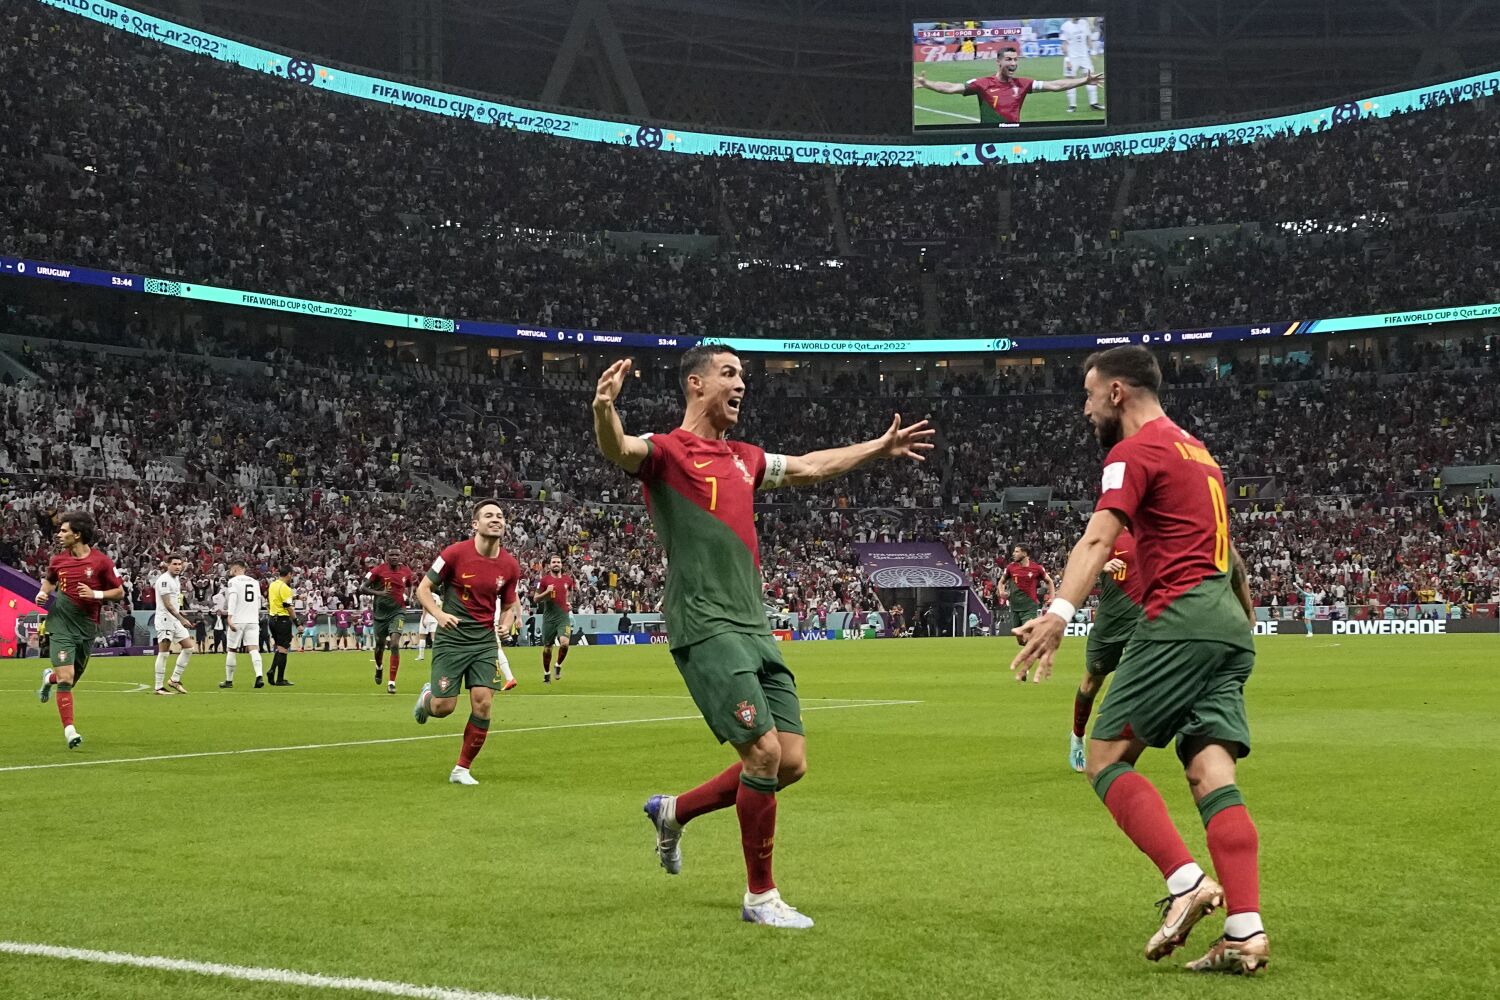 Con anotaciones de Fernandes, Portugal pasa a la siguiente fase de Qatar 2022 tras victoria sobre Uruguay